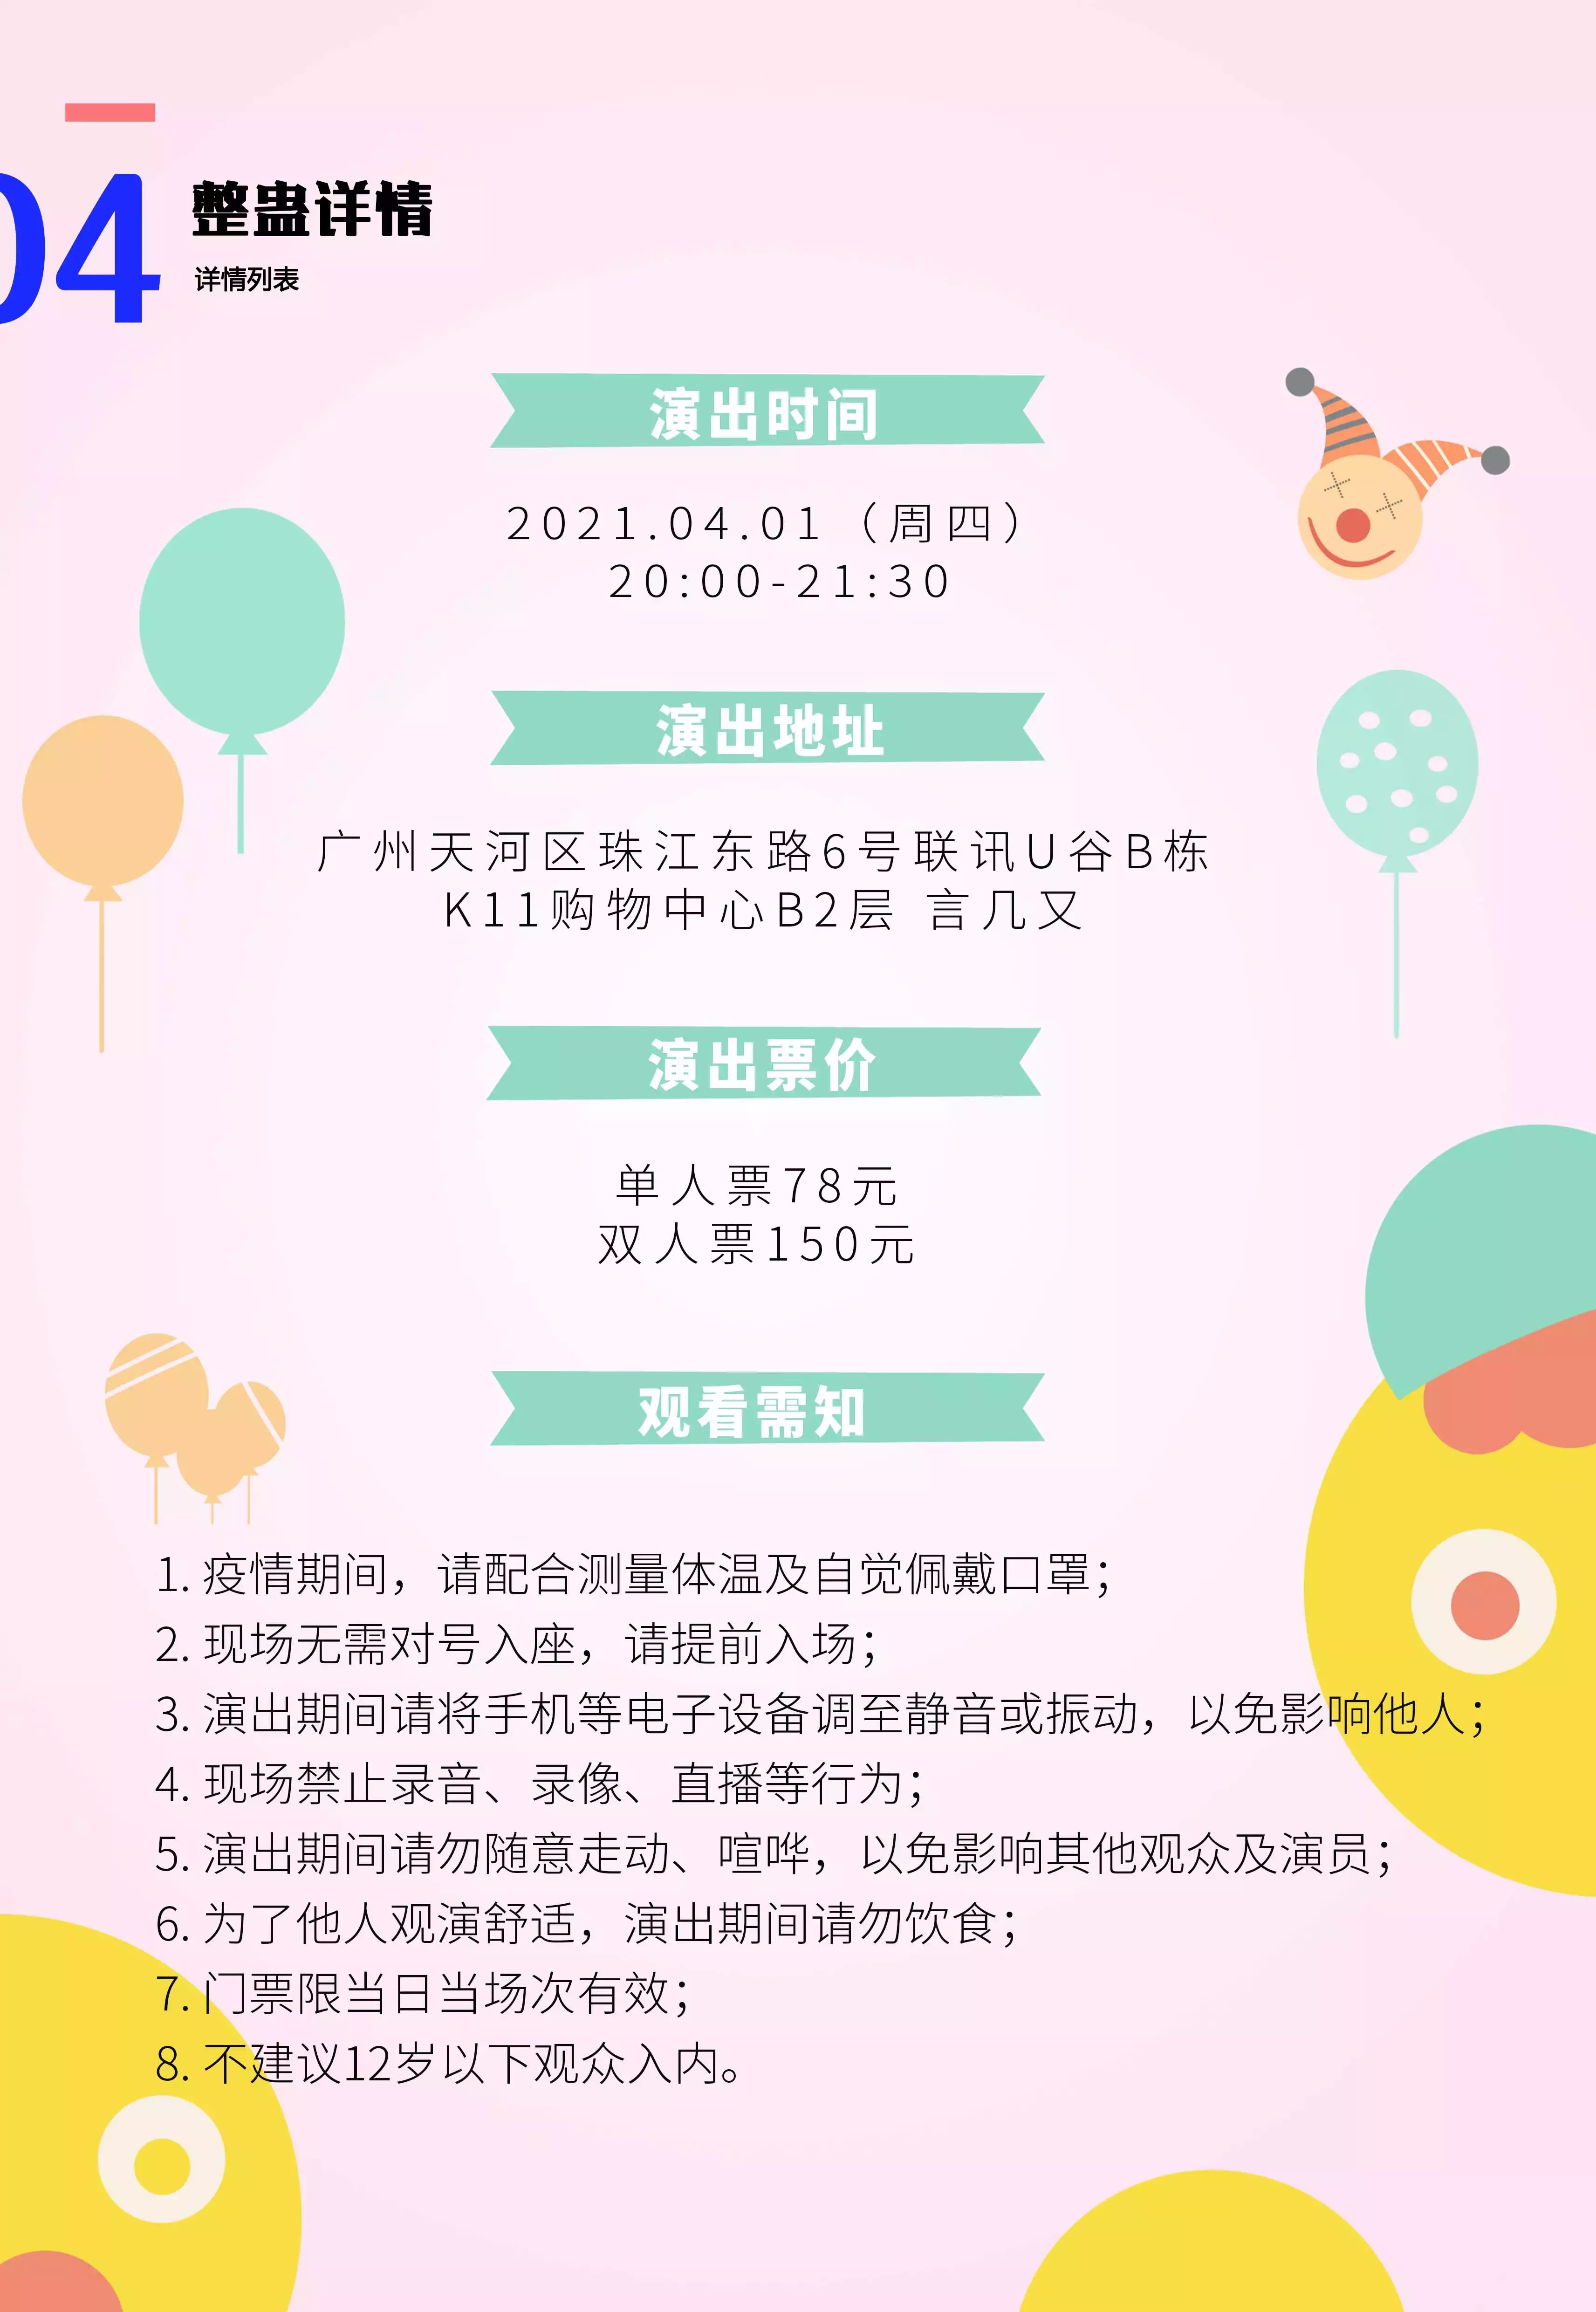 2021纯粹幽默脱口秀 番茄魔术 “愚”乐大party愚人节特别演出-广州站